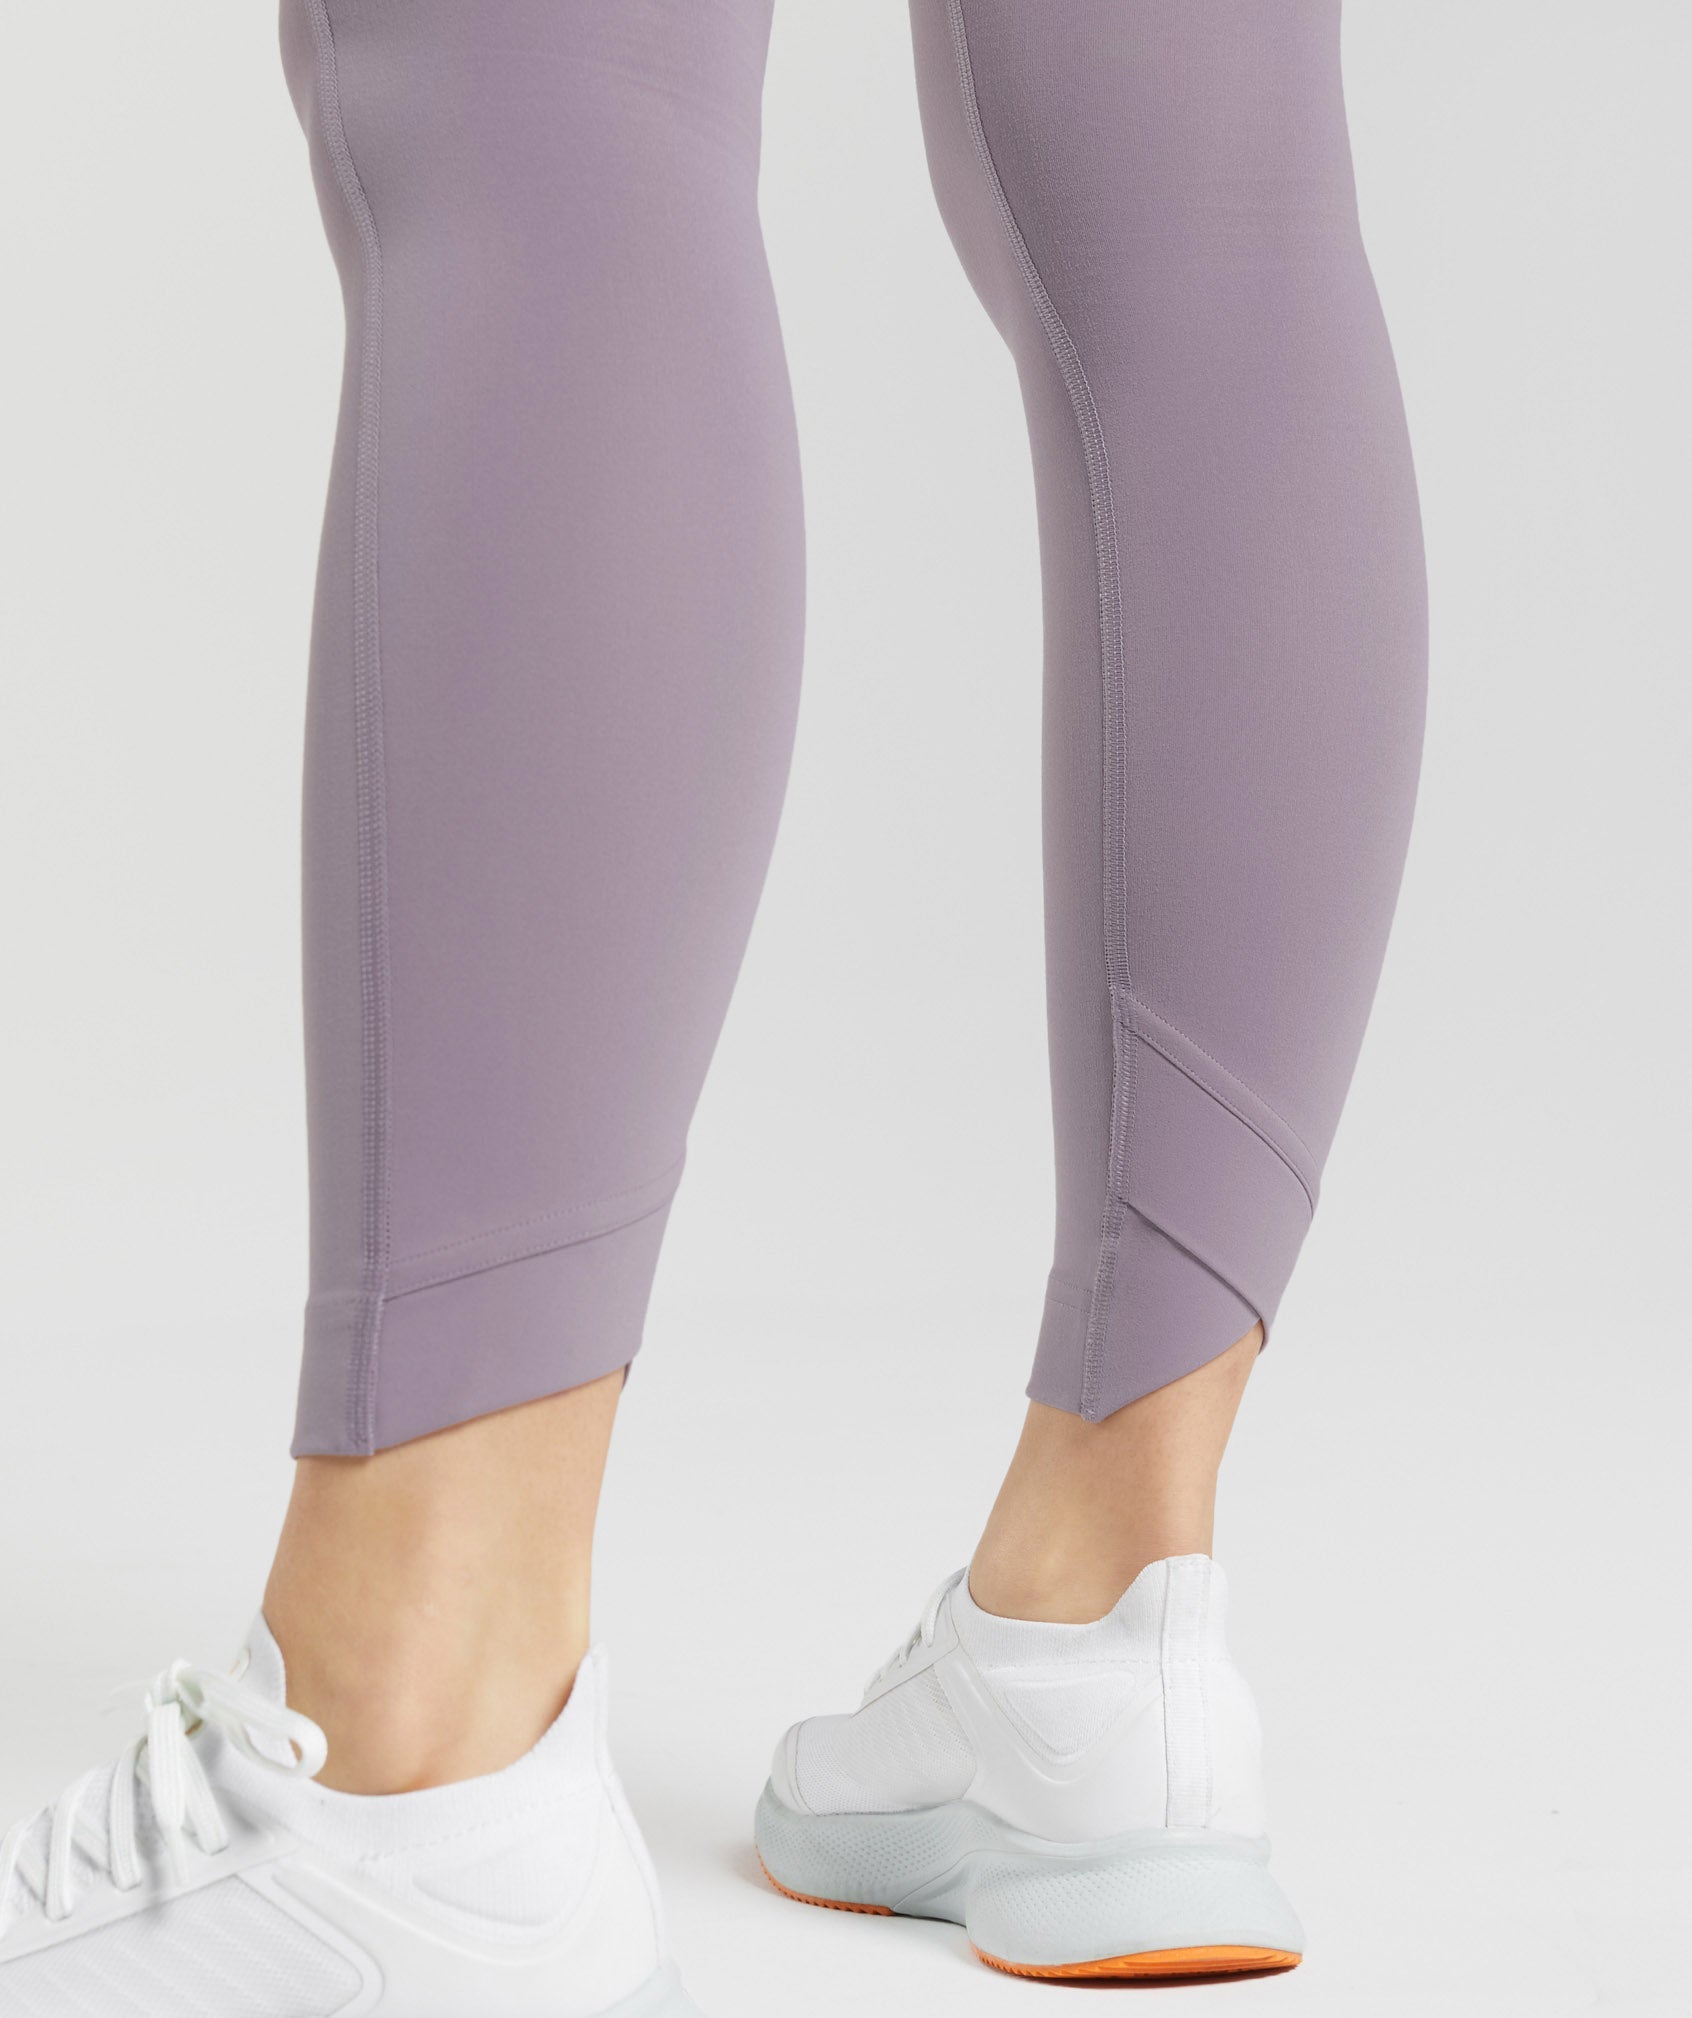 Gymshark Original Limited Addition Lavender Camo Leggings Medium NWOT